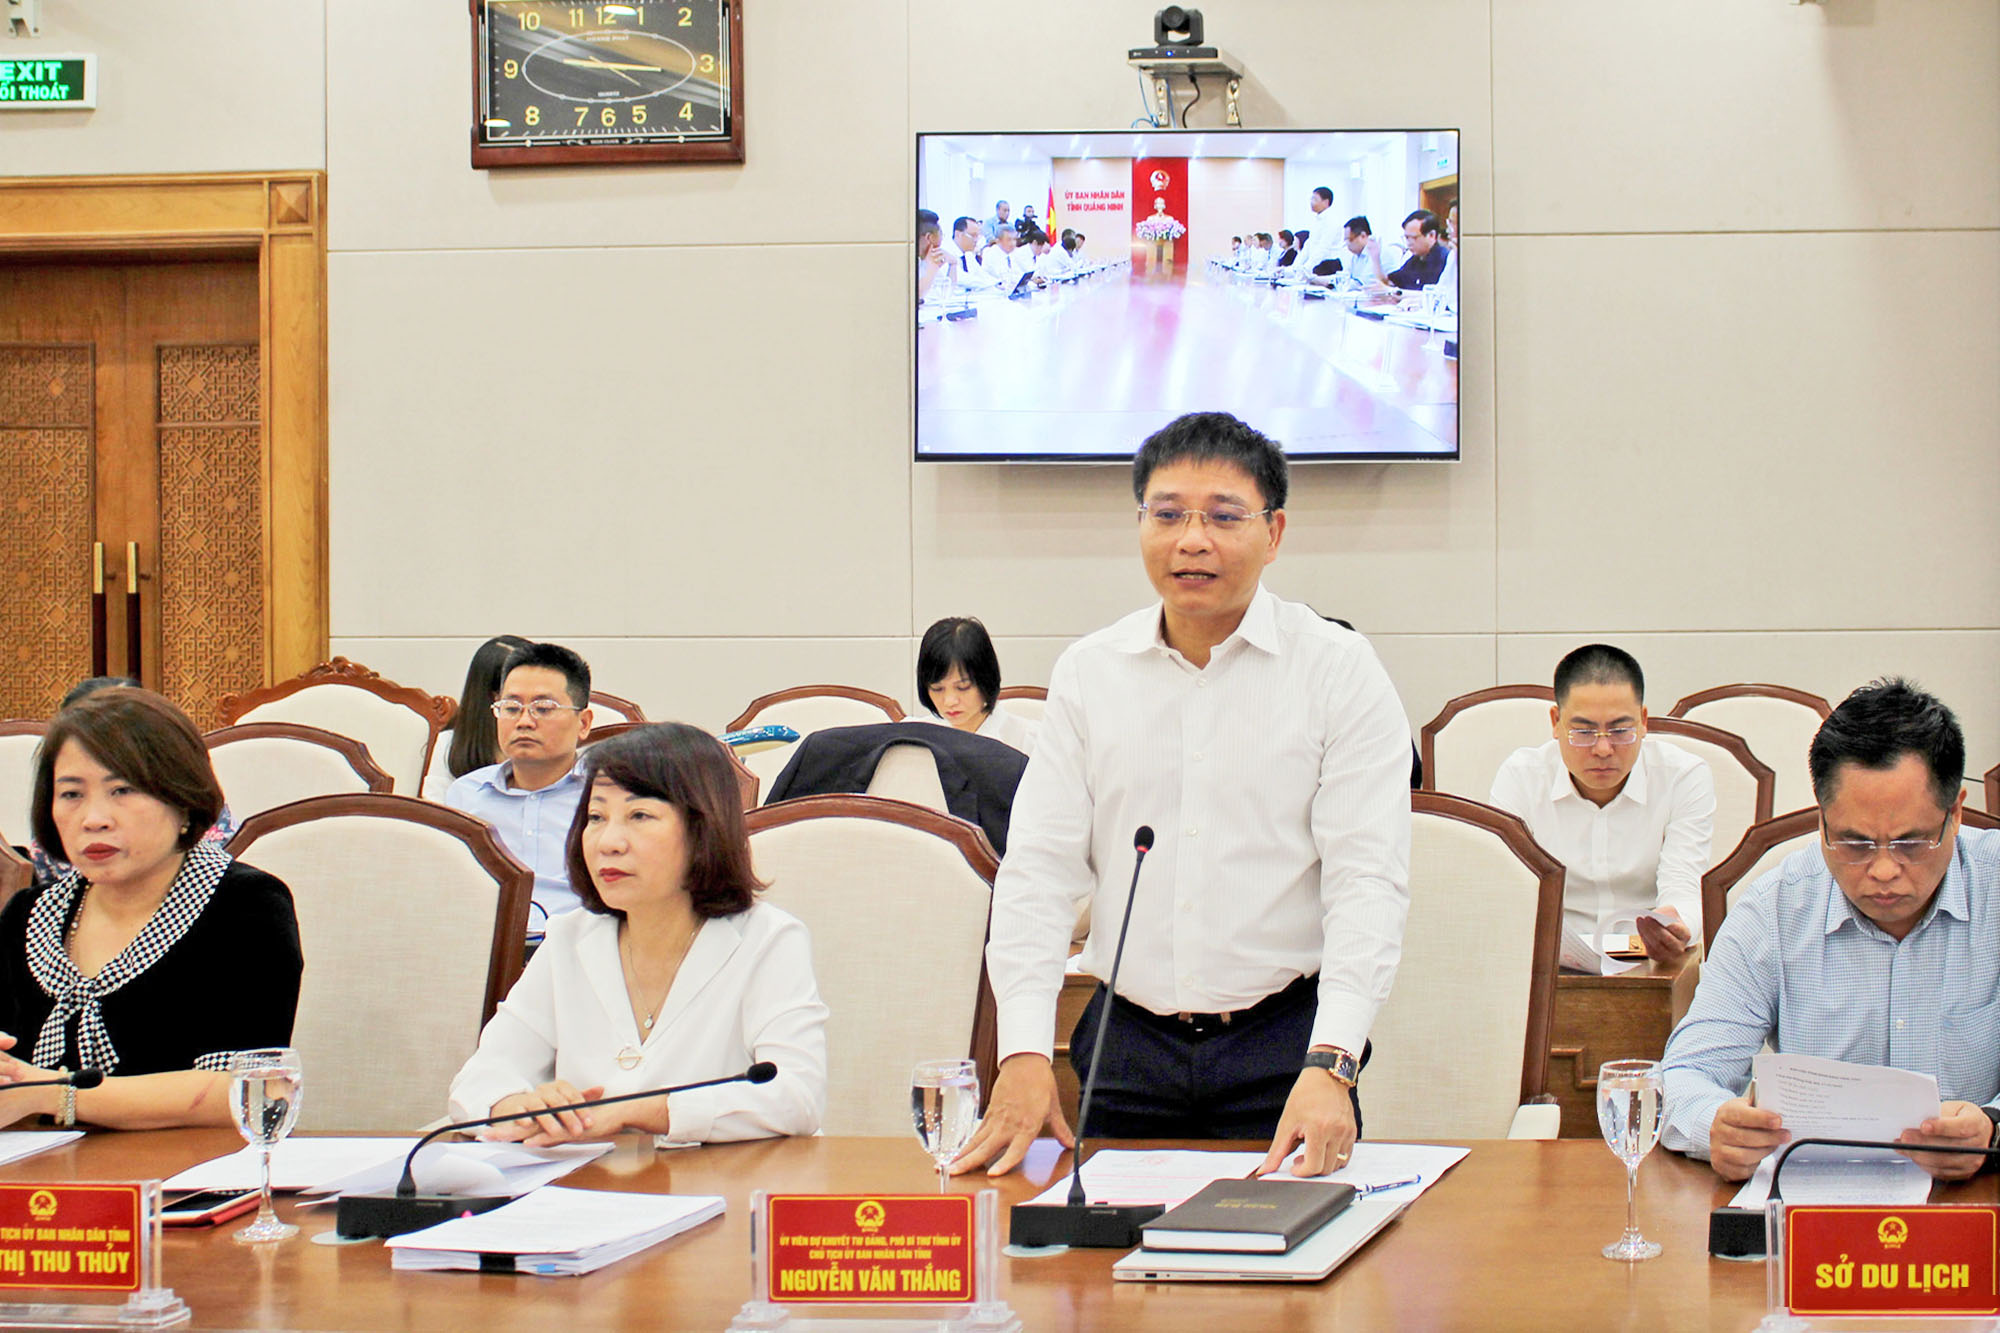 Đồng chí Nguyễn Văn Thắng, Chủ tịch UBND tỉnh, phát biểu tại buổi làm việc.